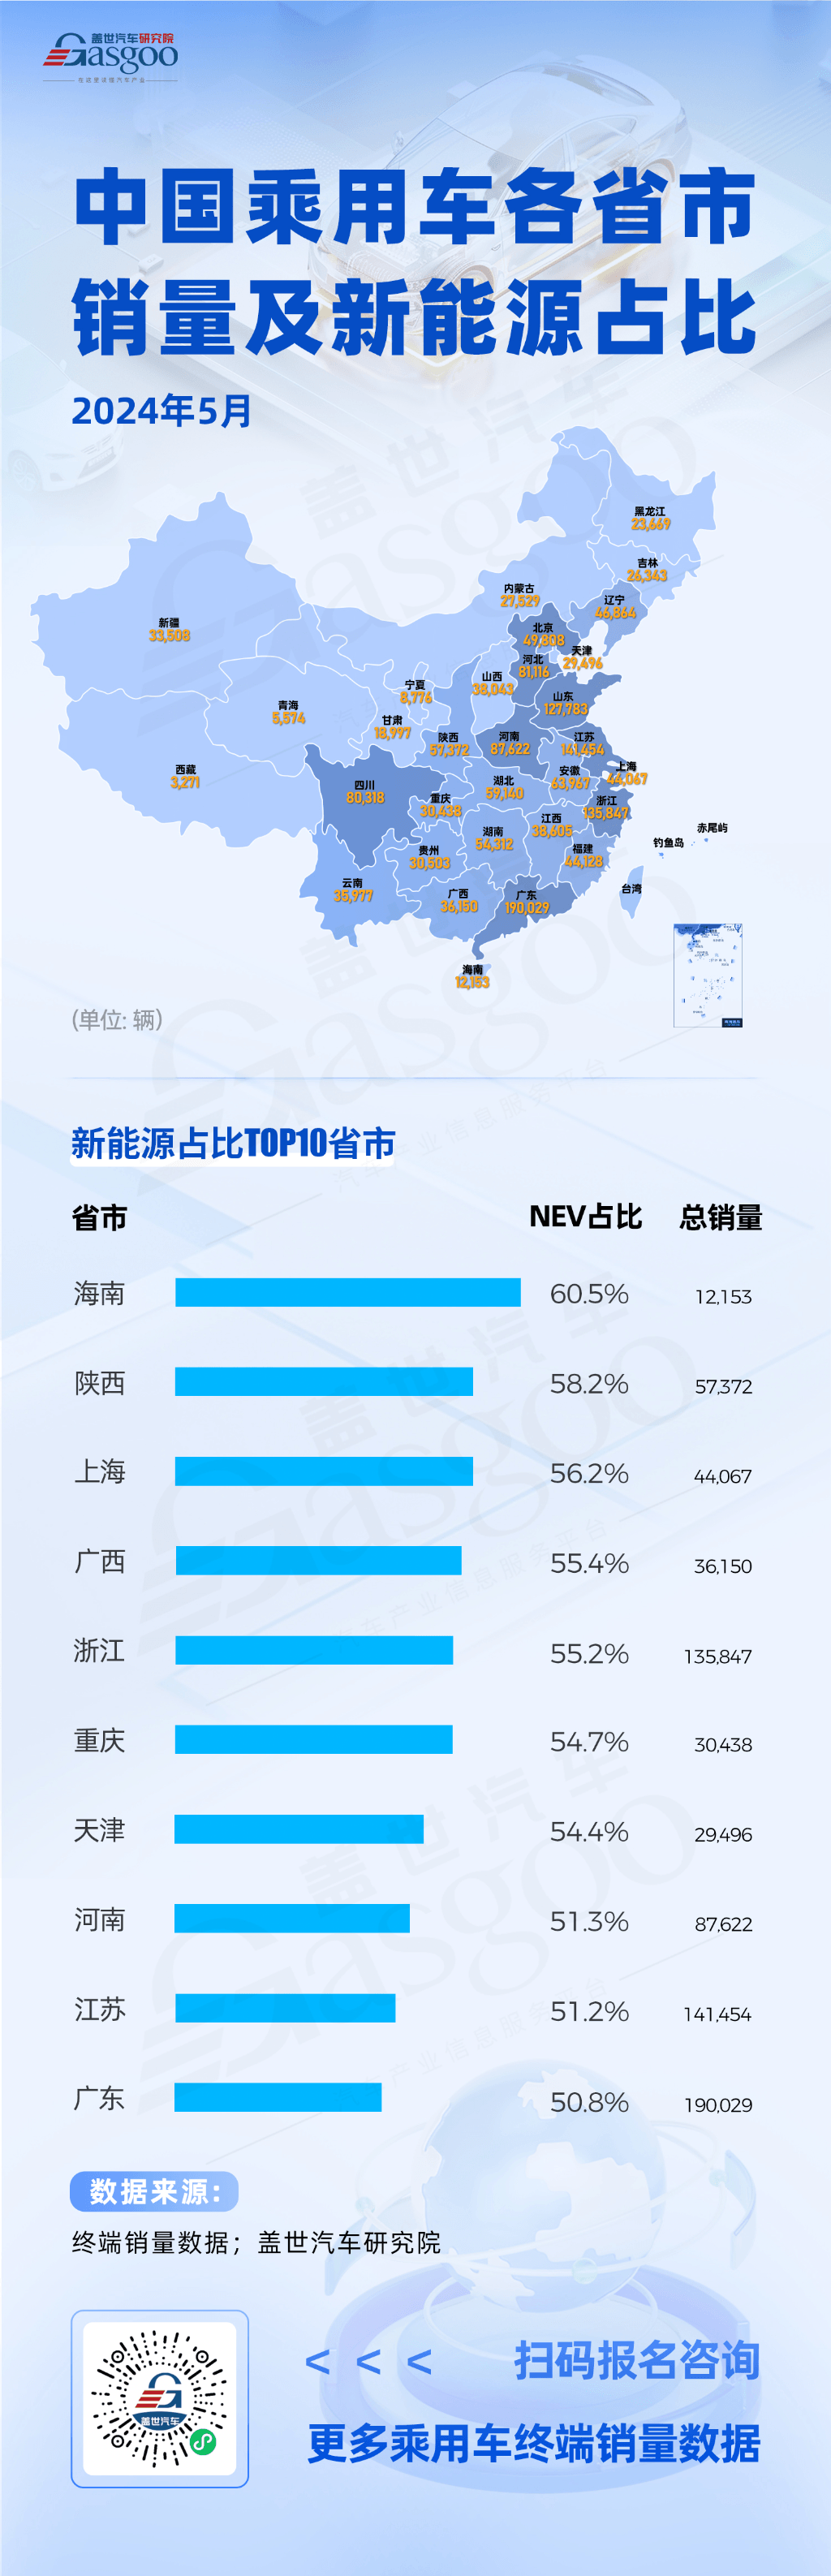 广东销量第一，新能源占比TOP10省市全面突破50%大关 | 中国乘用车各省市销量及新能源占比分析